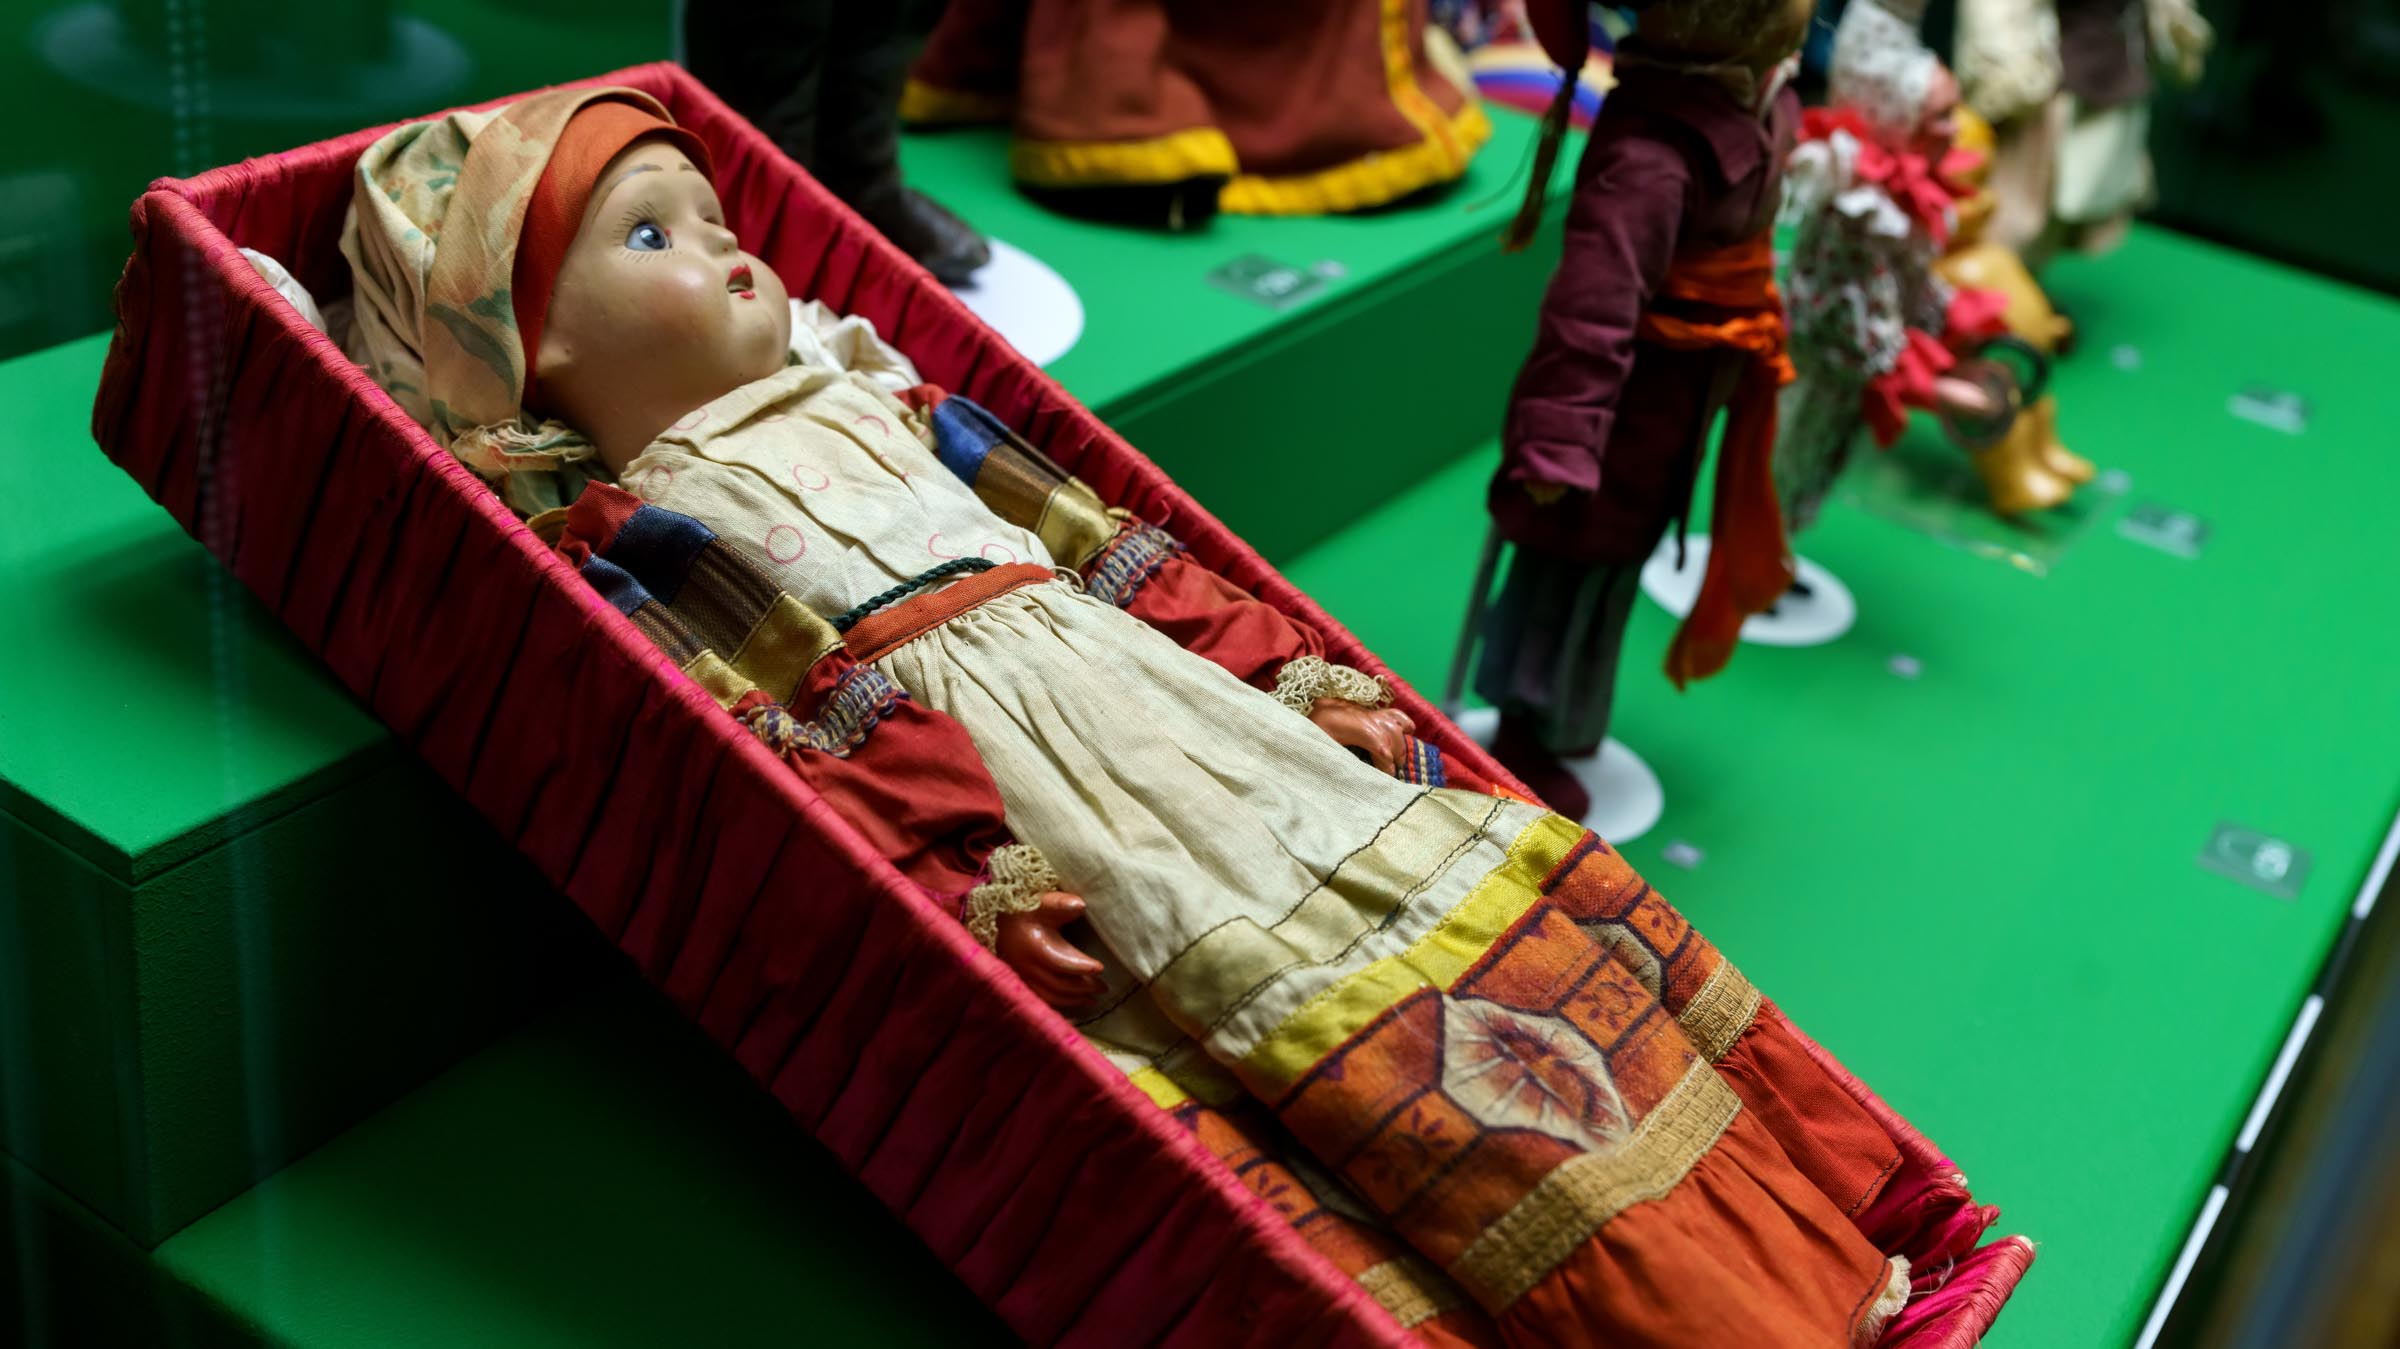 Куклы в национальных костюмах из коллекции Музея уникальных кукол::Золотой век кукол